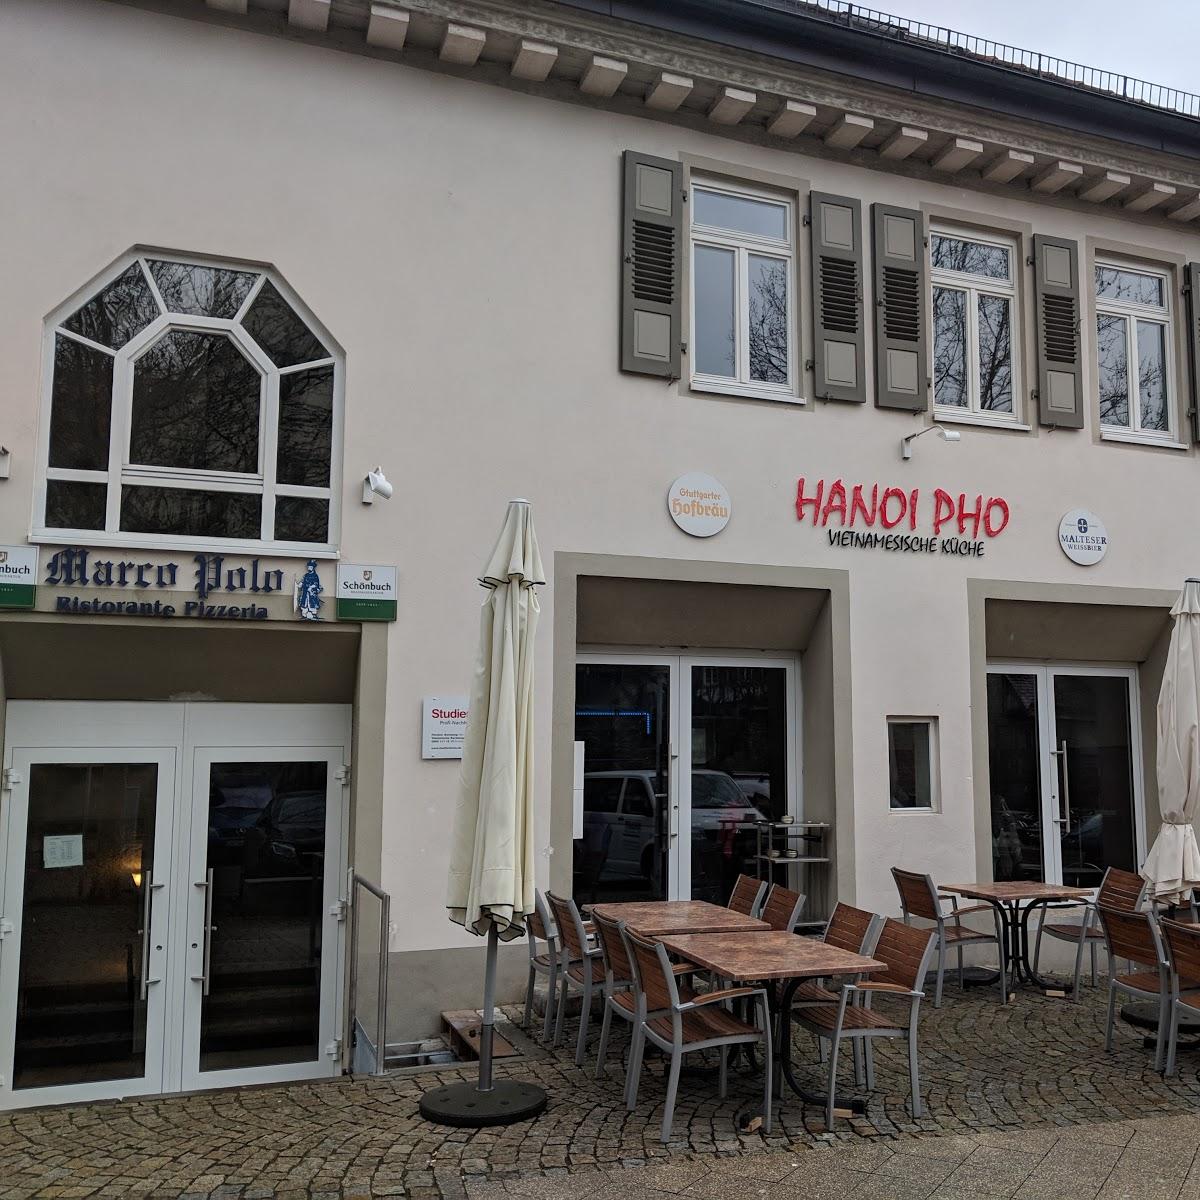 Restaurant "Hanoi Pho" in Herrenberg